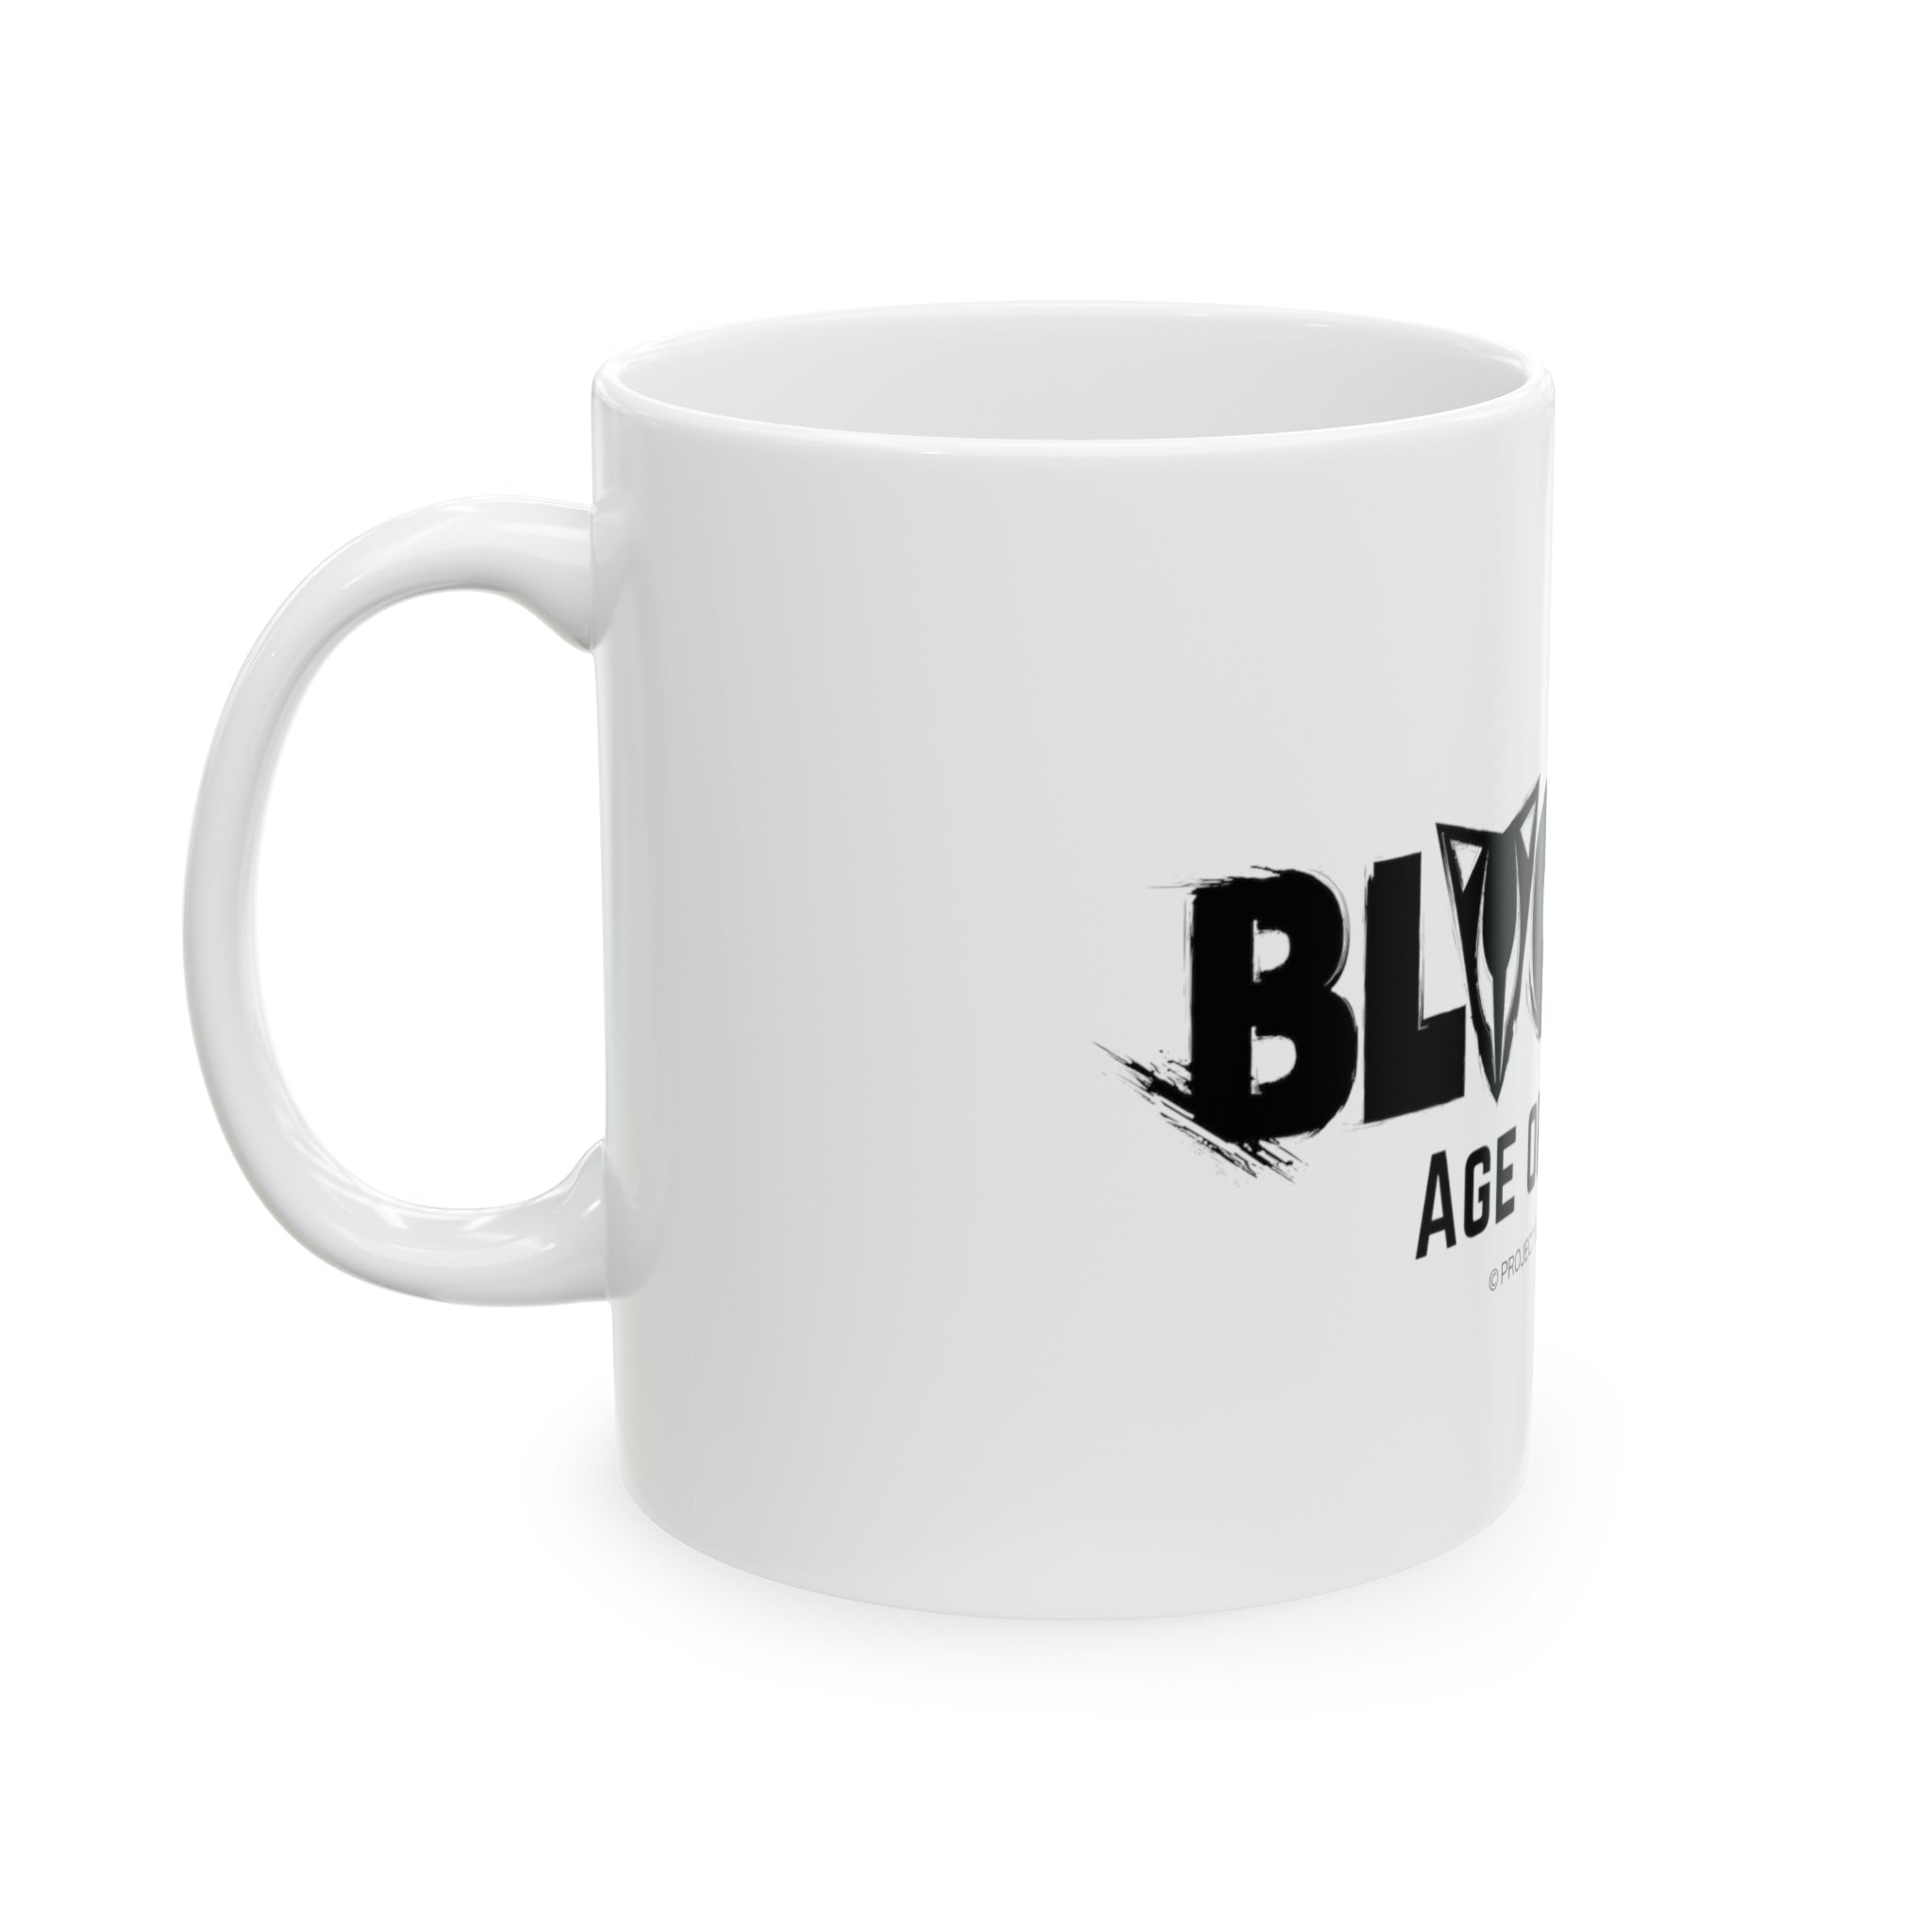 BLACKFOX LOGO Coffee Mug (White)